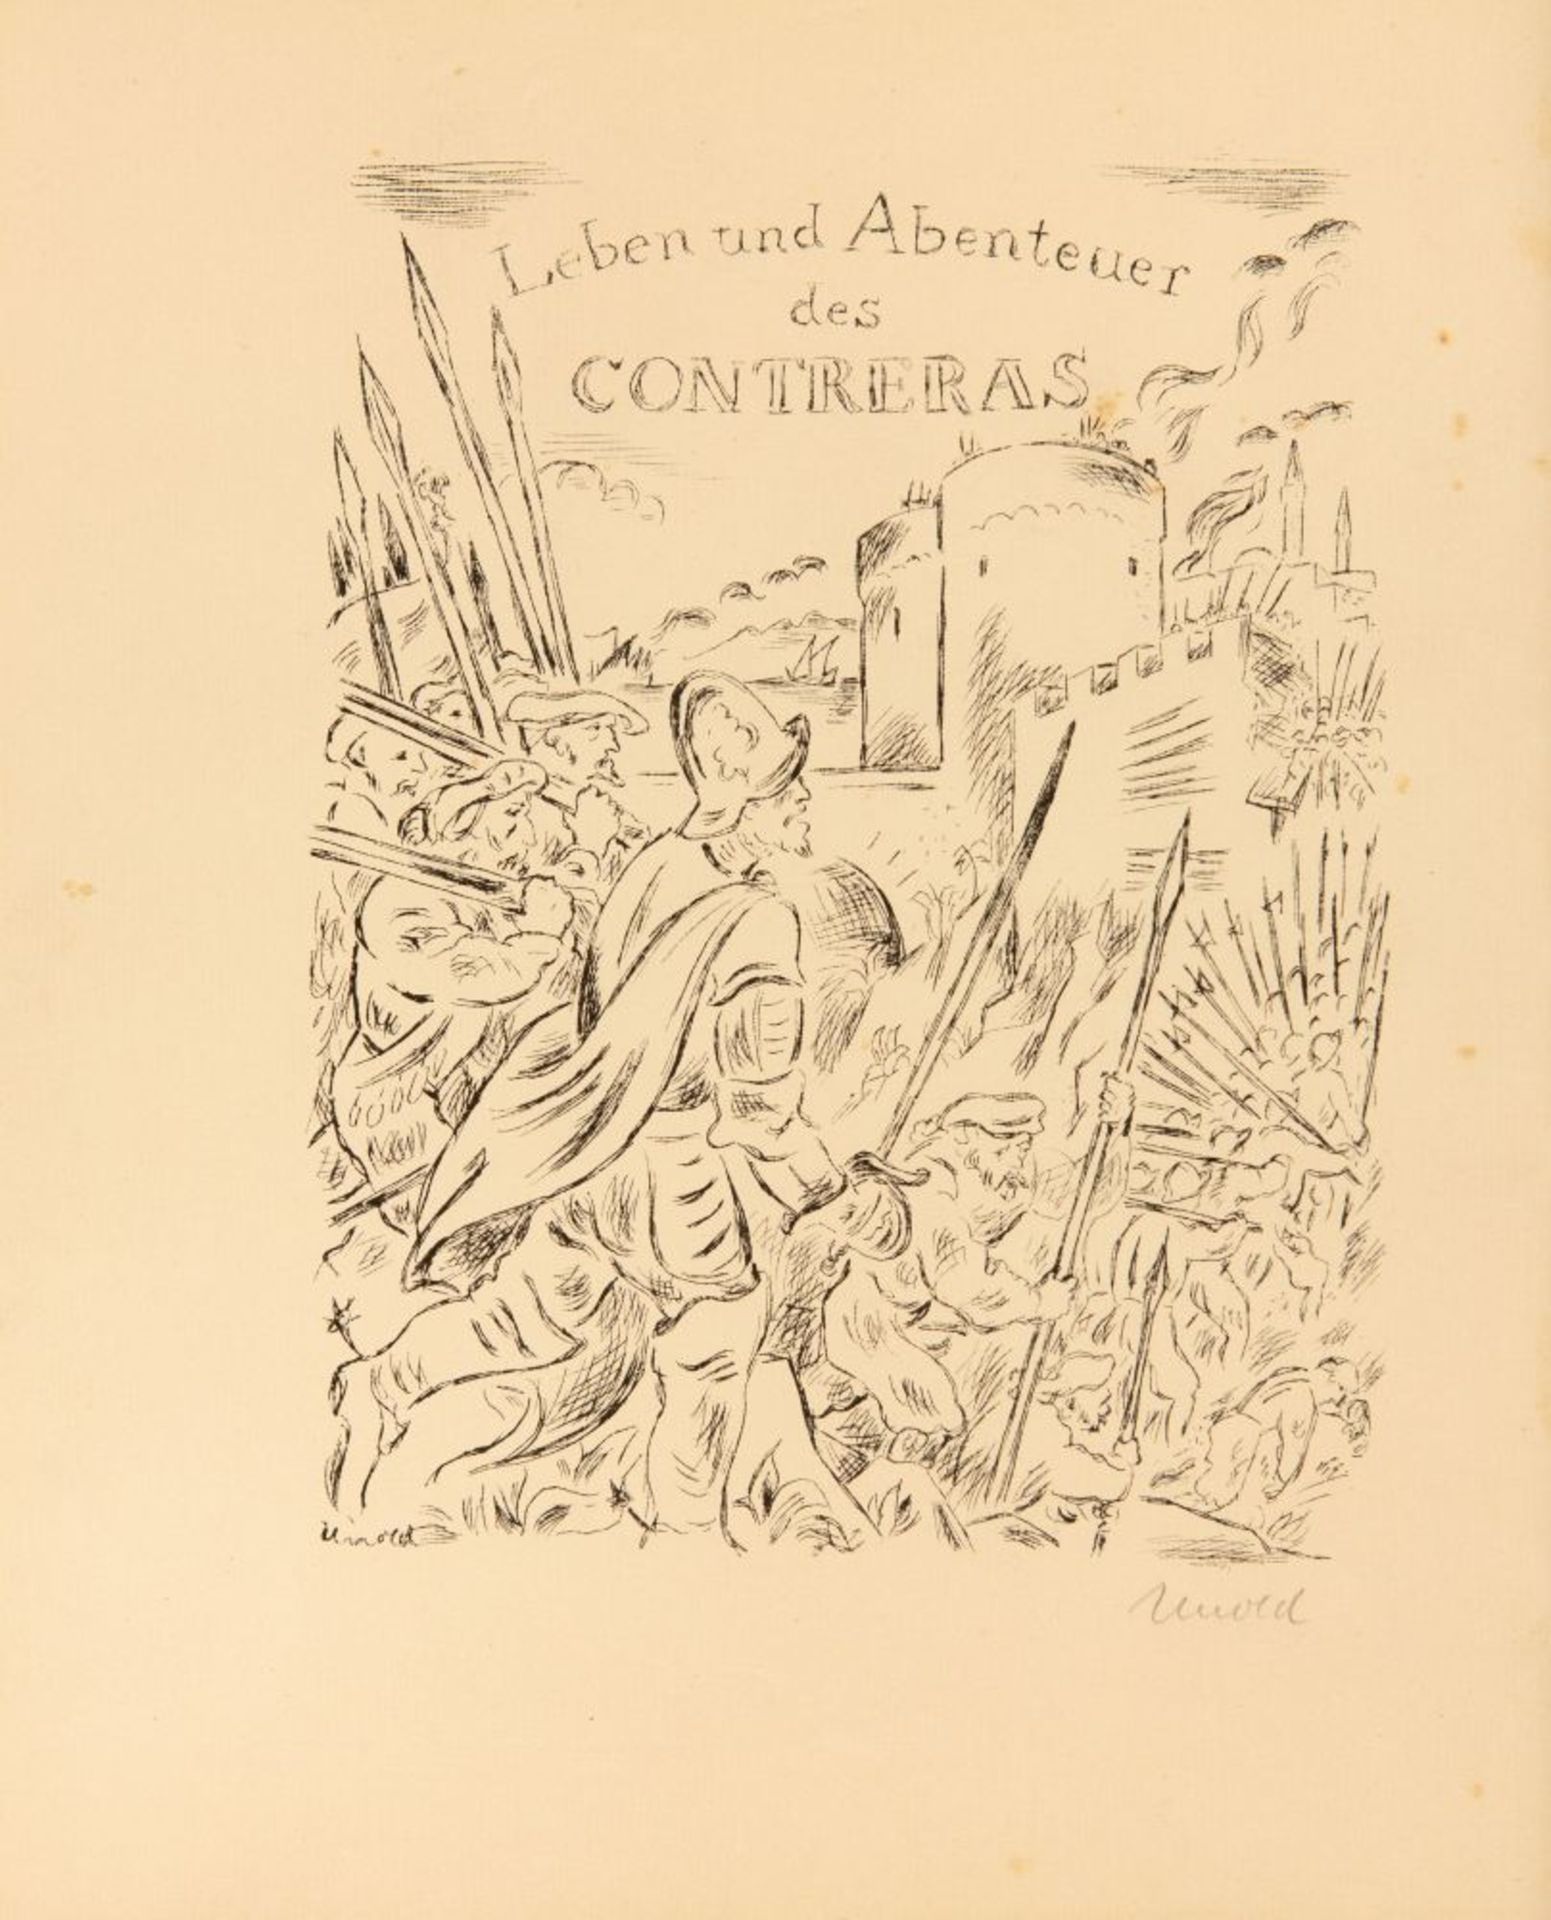 A. de Contreras / M. Unold, Leben, Taten und Abenteuer. Bln 1925. Ex. 115/250.